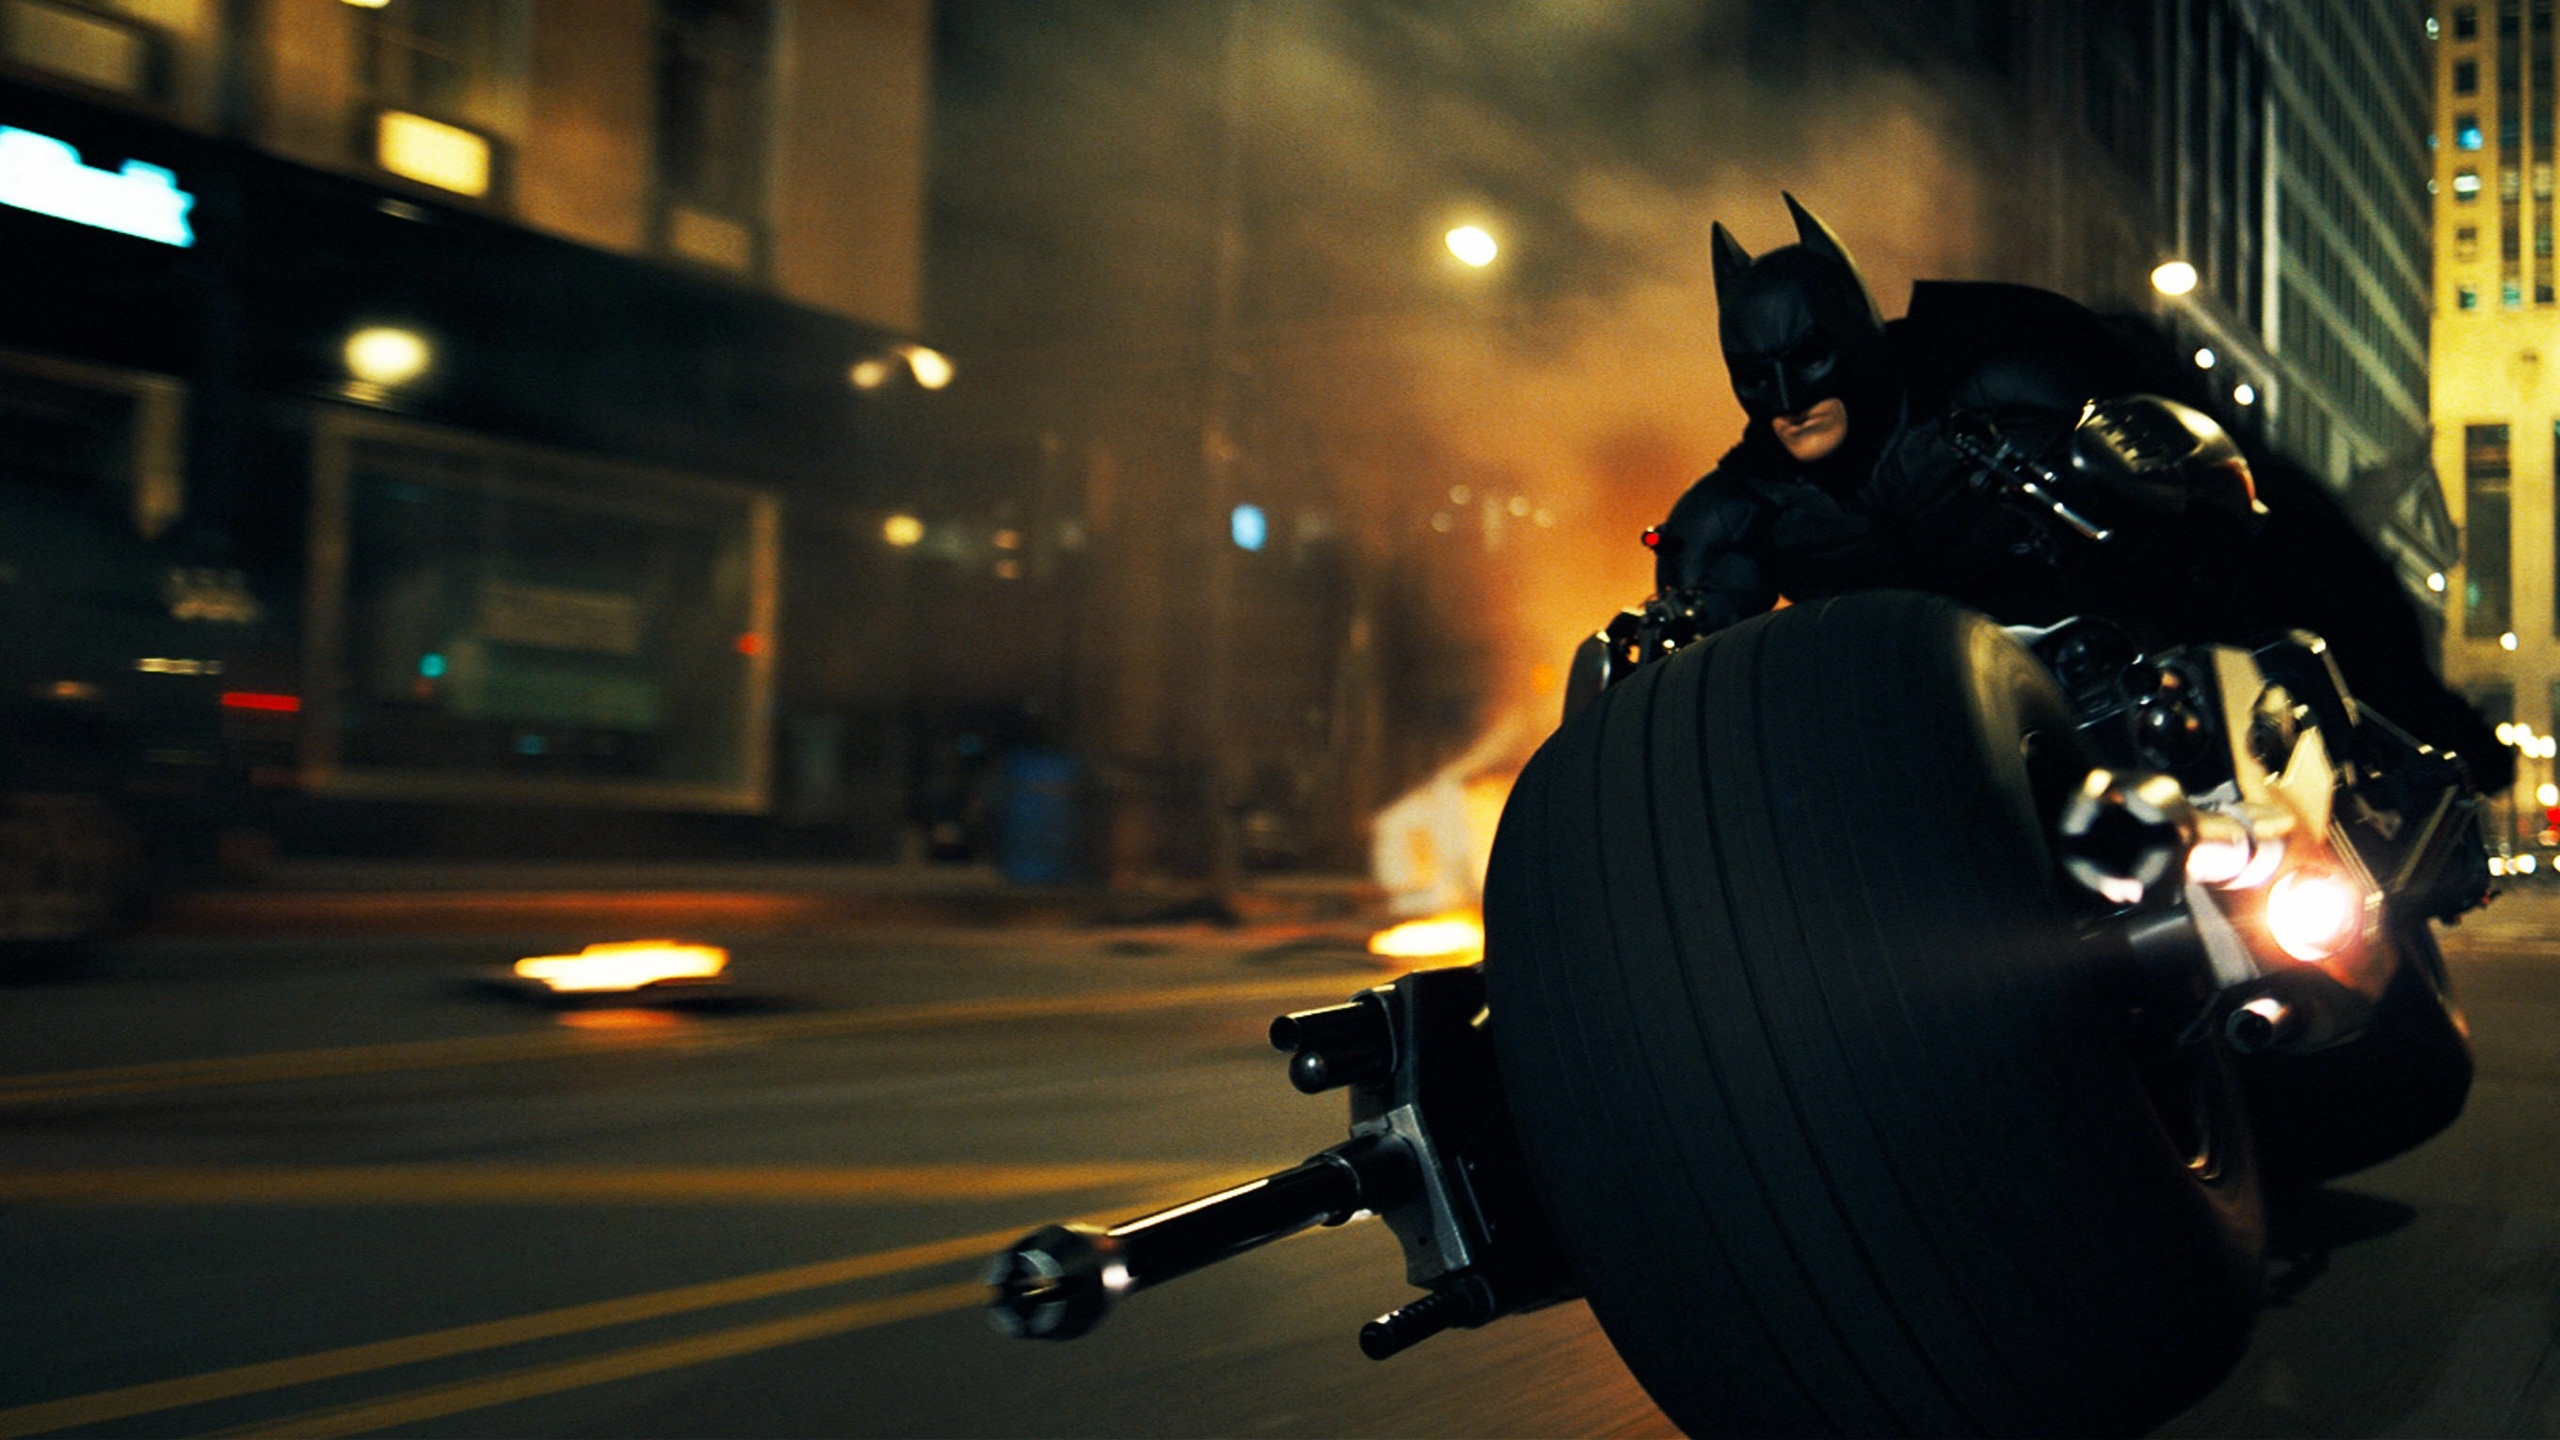 蝙蝠侠黑暗骑士摩托车高清壁纸2560x1440分辨率查看